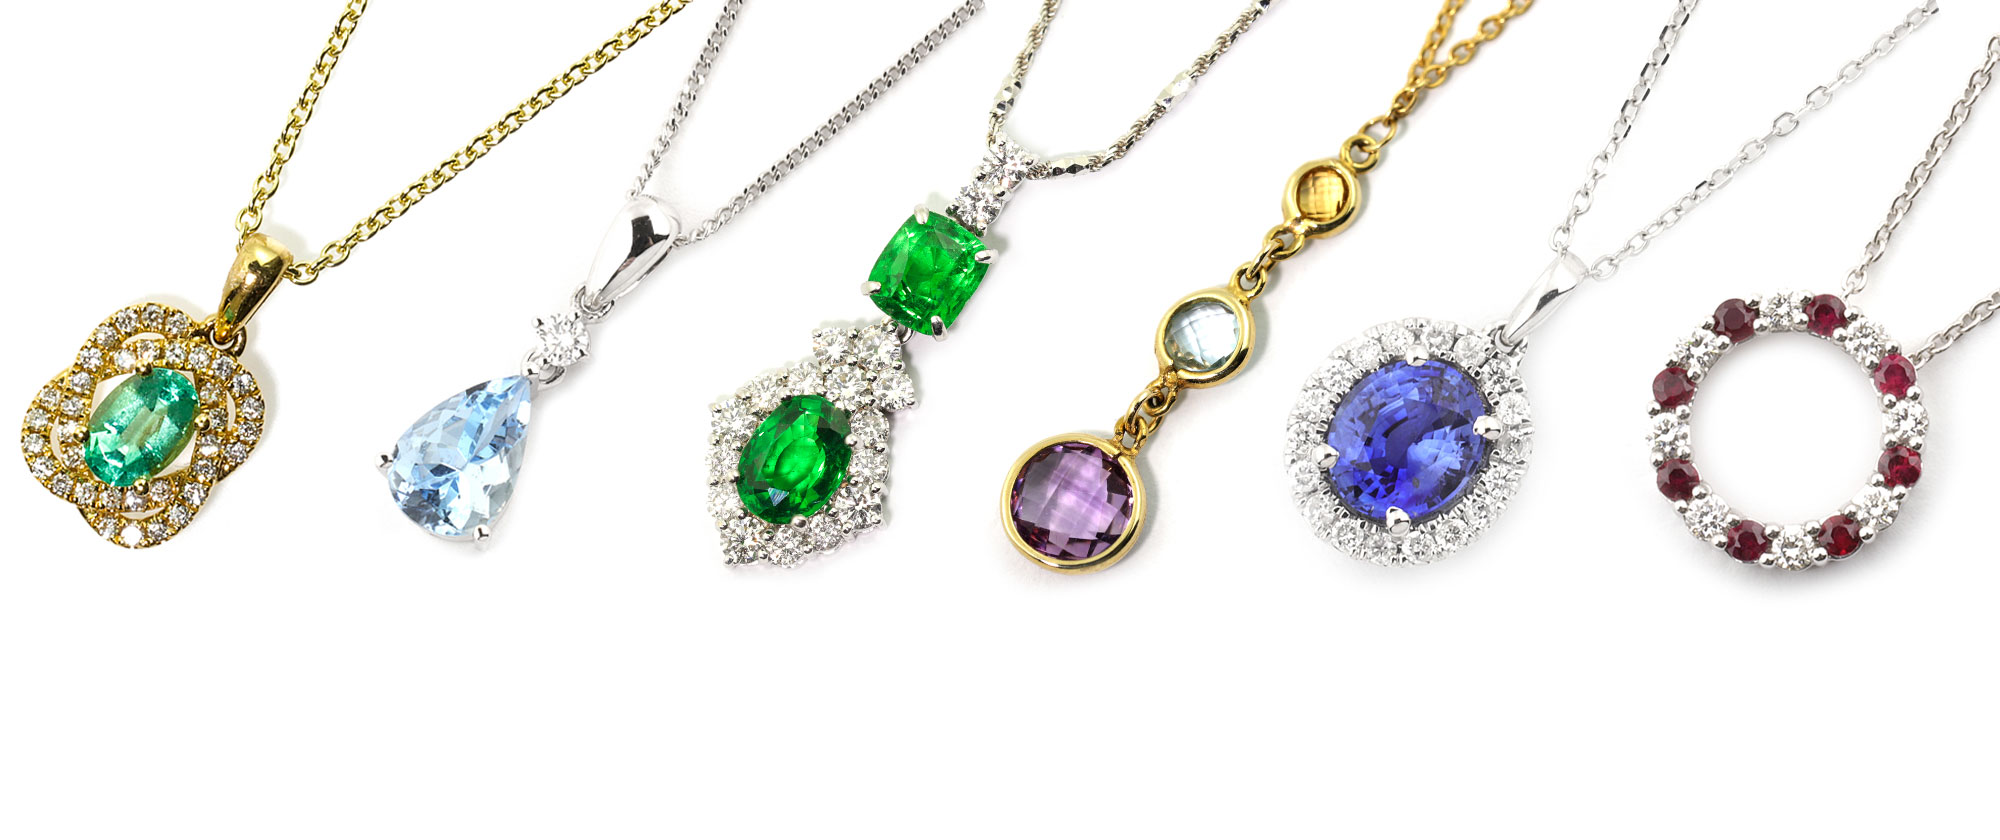 pendant & necklace selection Studleys Jewellers Wells UK